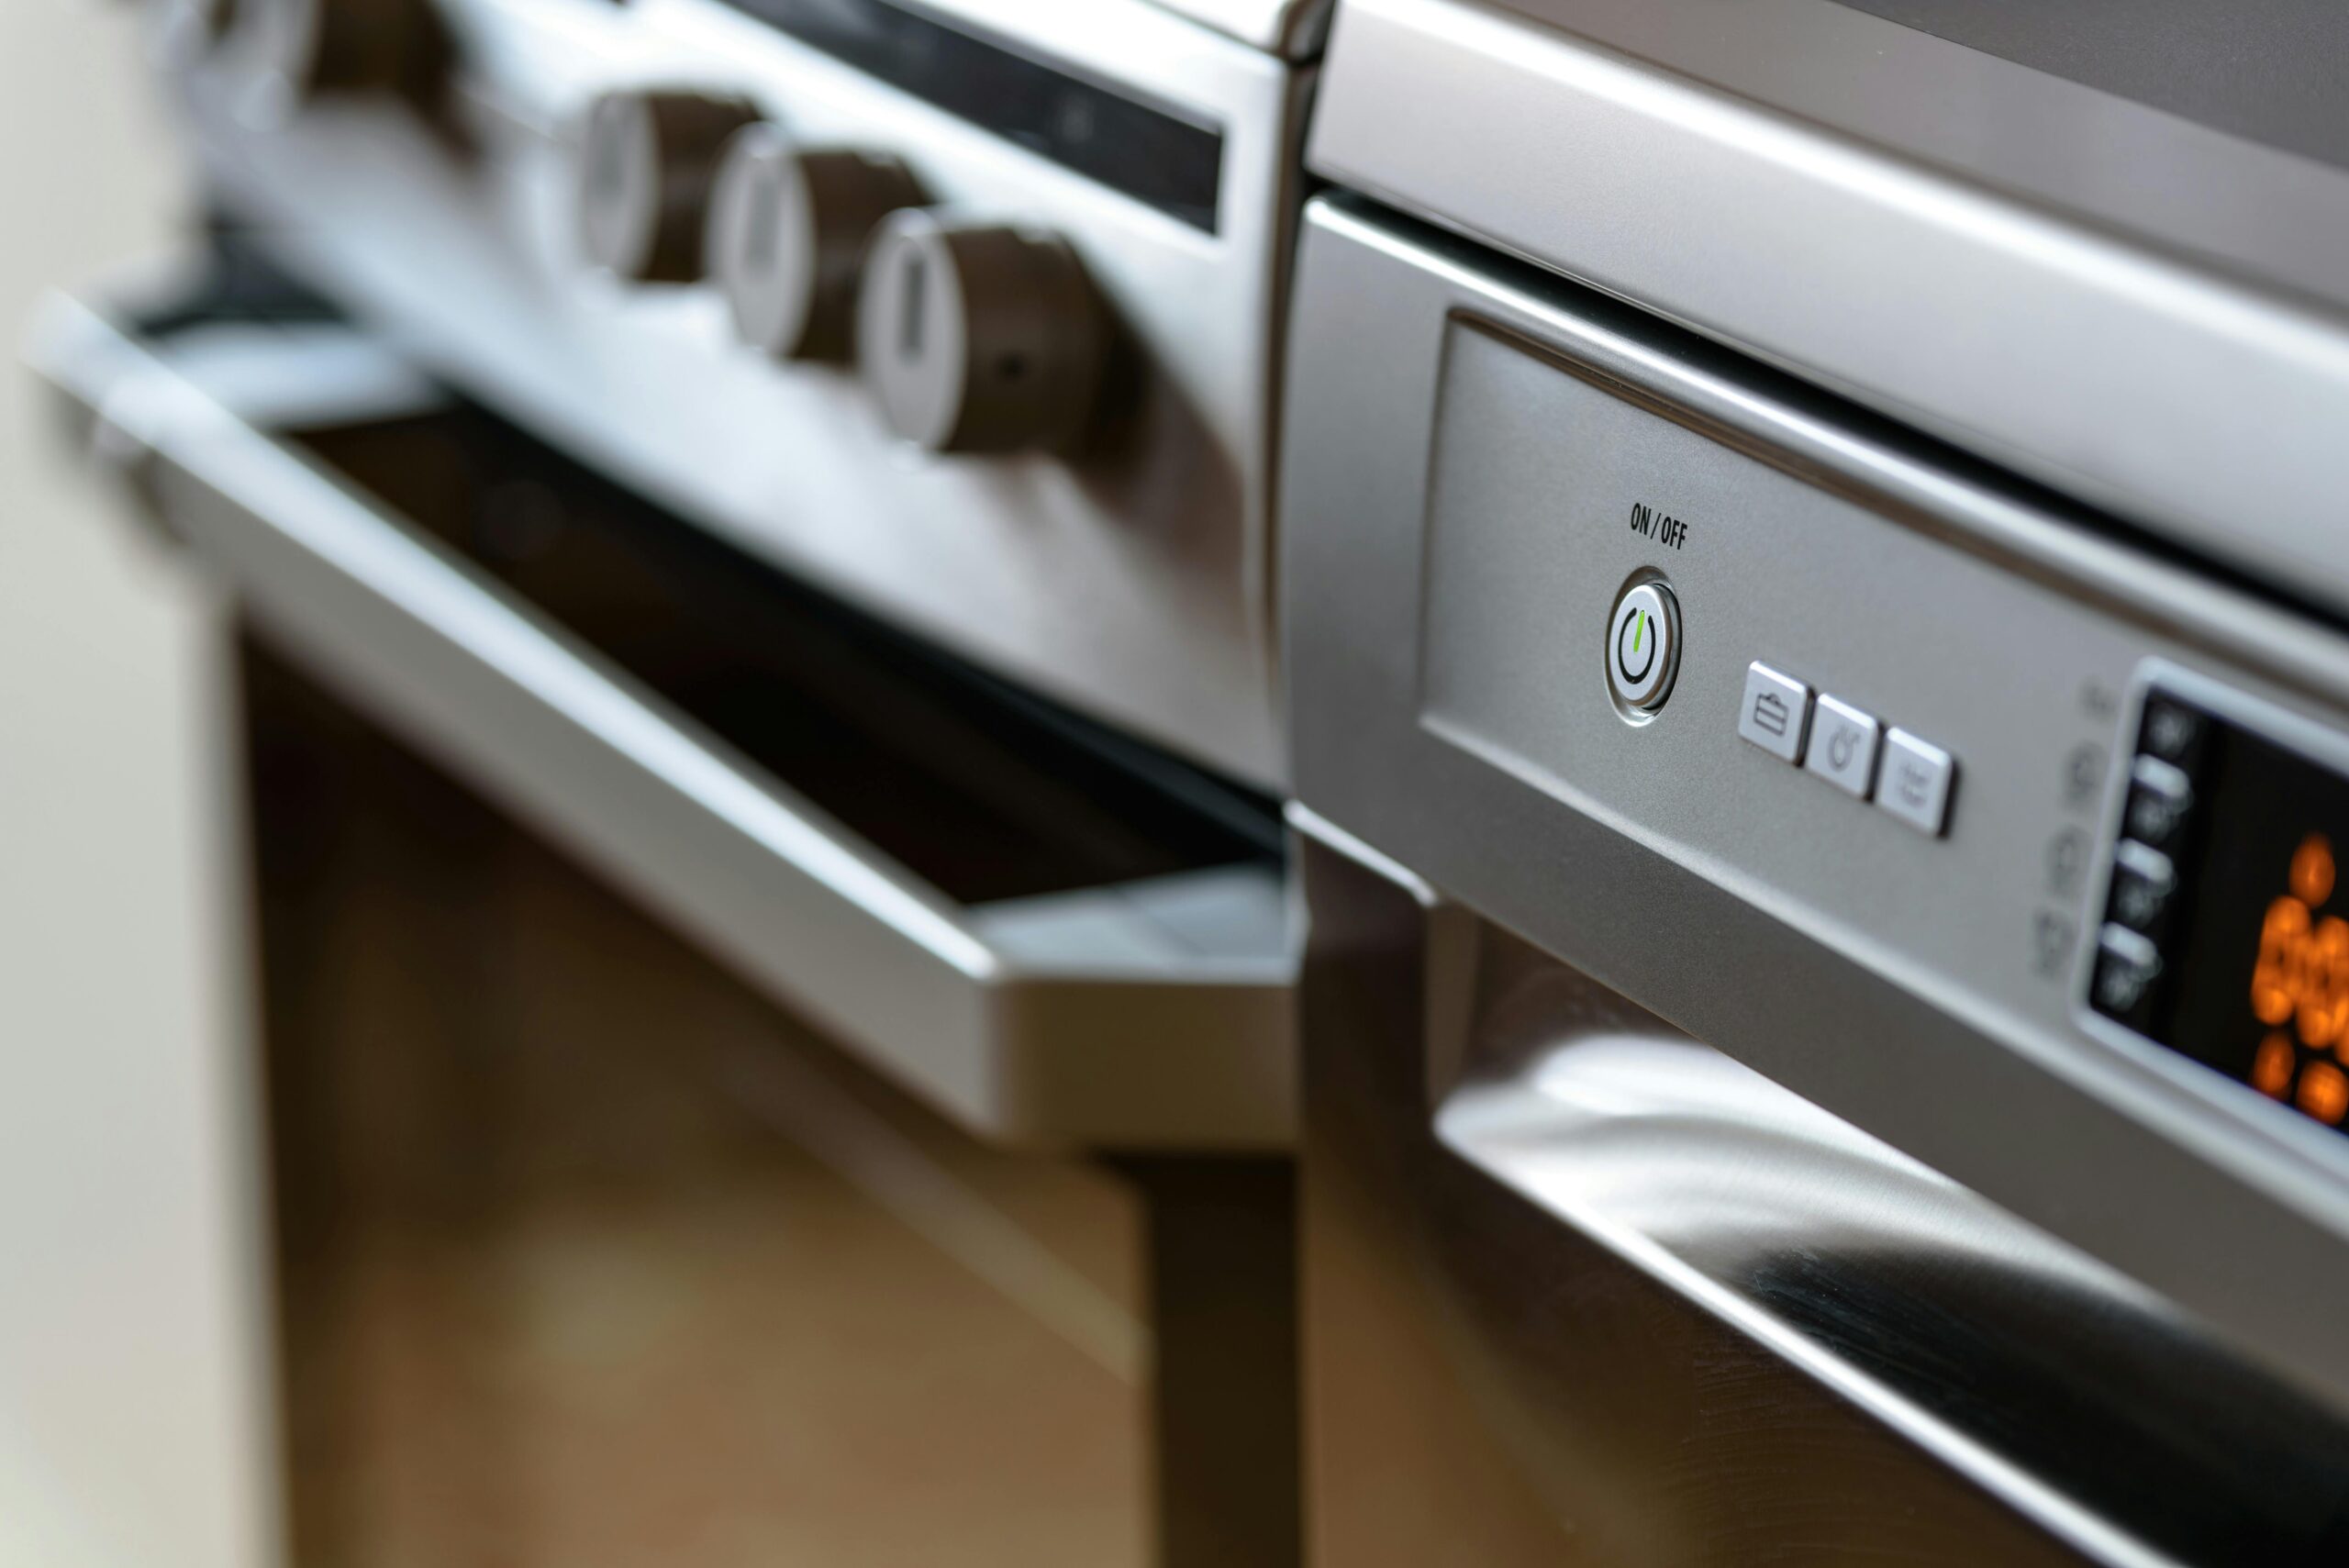 El sector del home appliance afronta un fuerte crecimiento impulsado por la integración tecnológica y el diseño